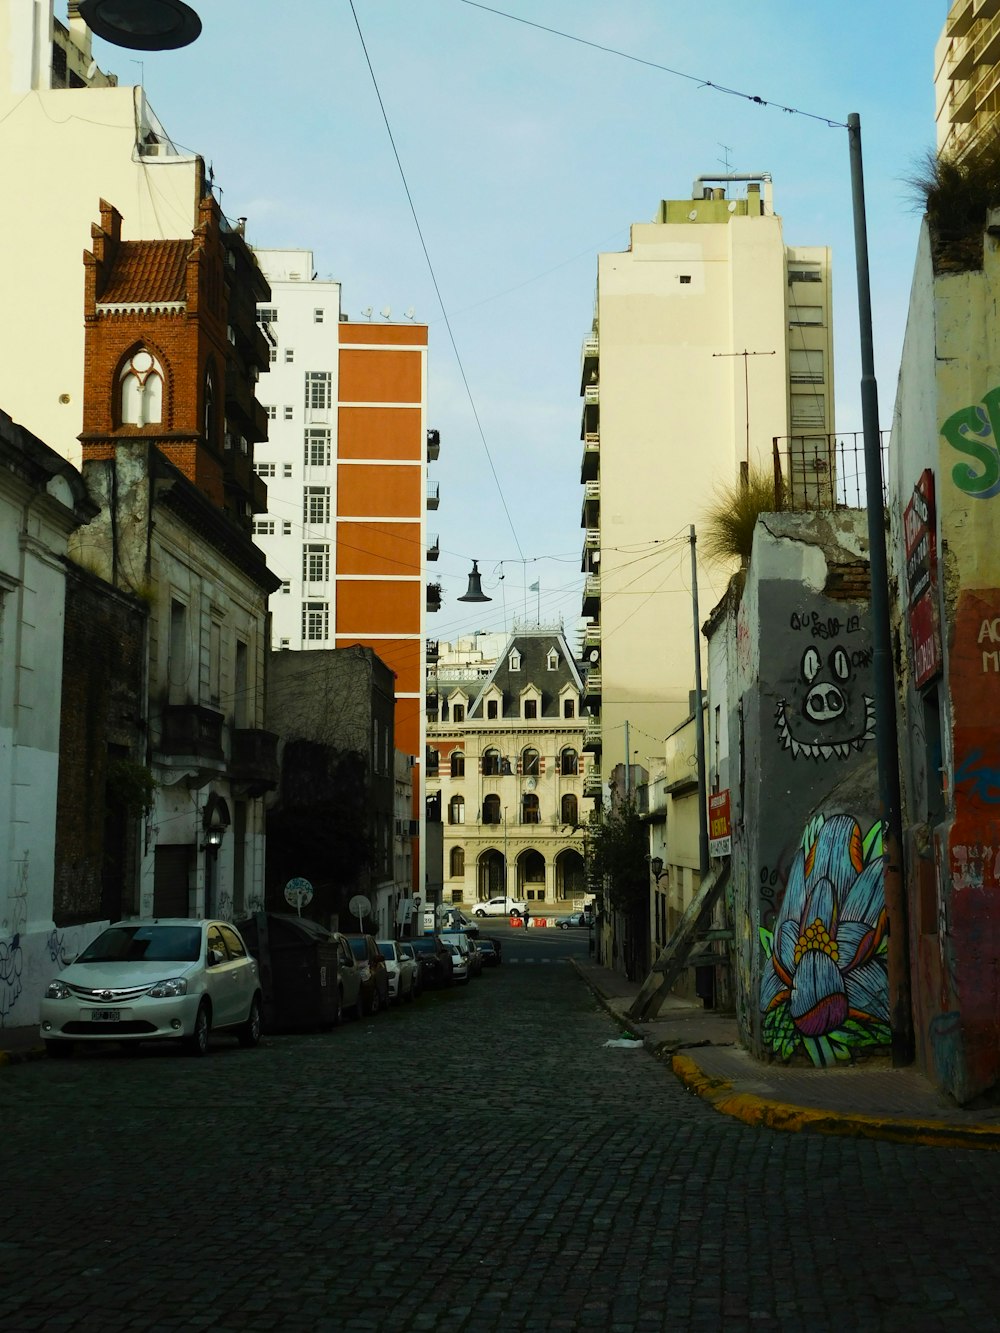 Eine Stadtstraße mit einem Haufen Graffiti an den Gebäuden